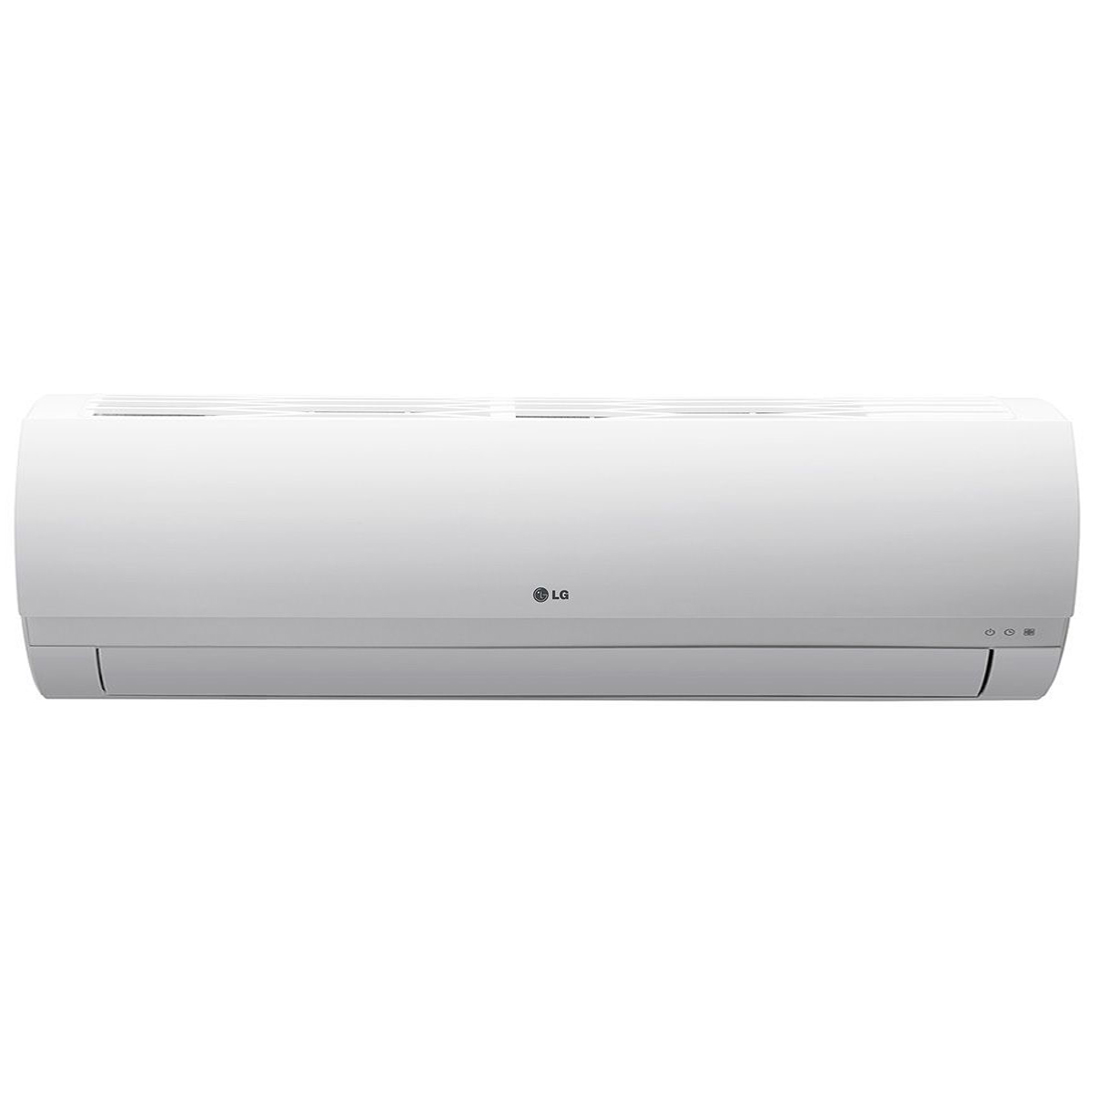 LG Air Conditioner, 18000 BTU, S4NW18KL2P